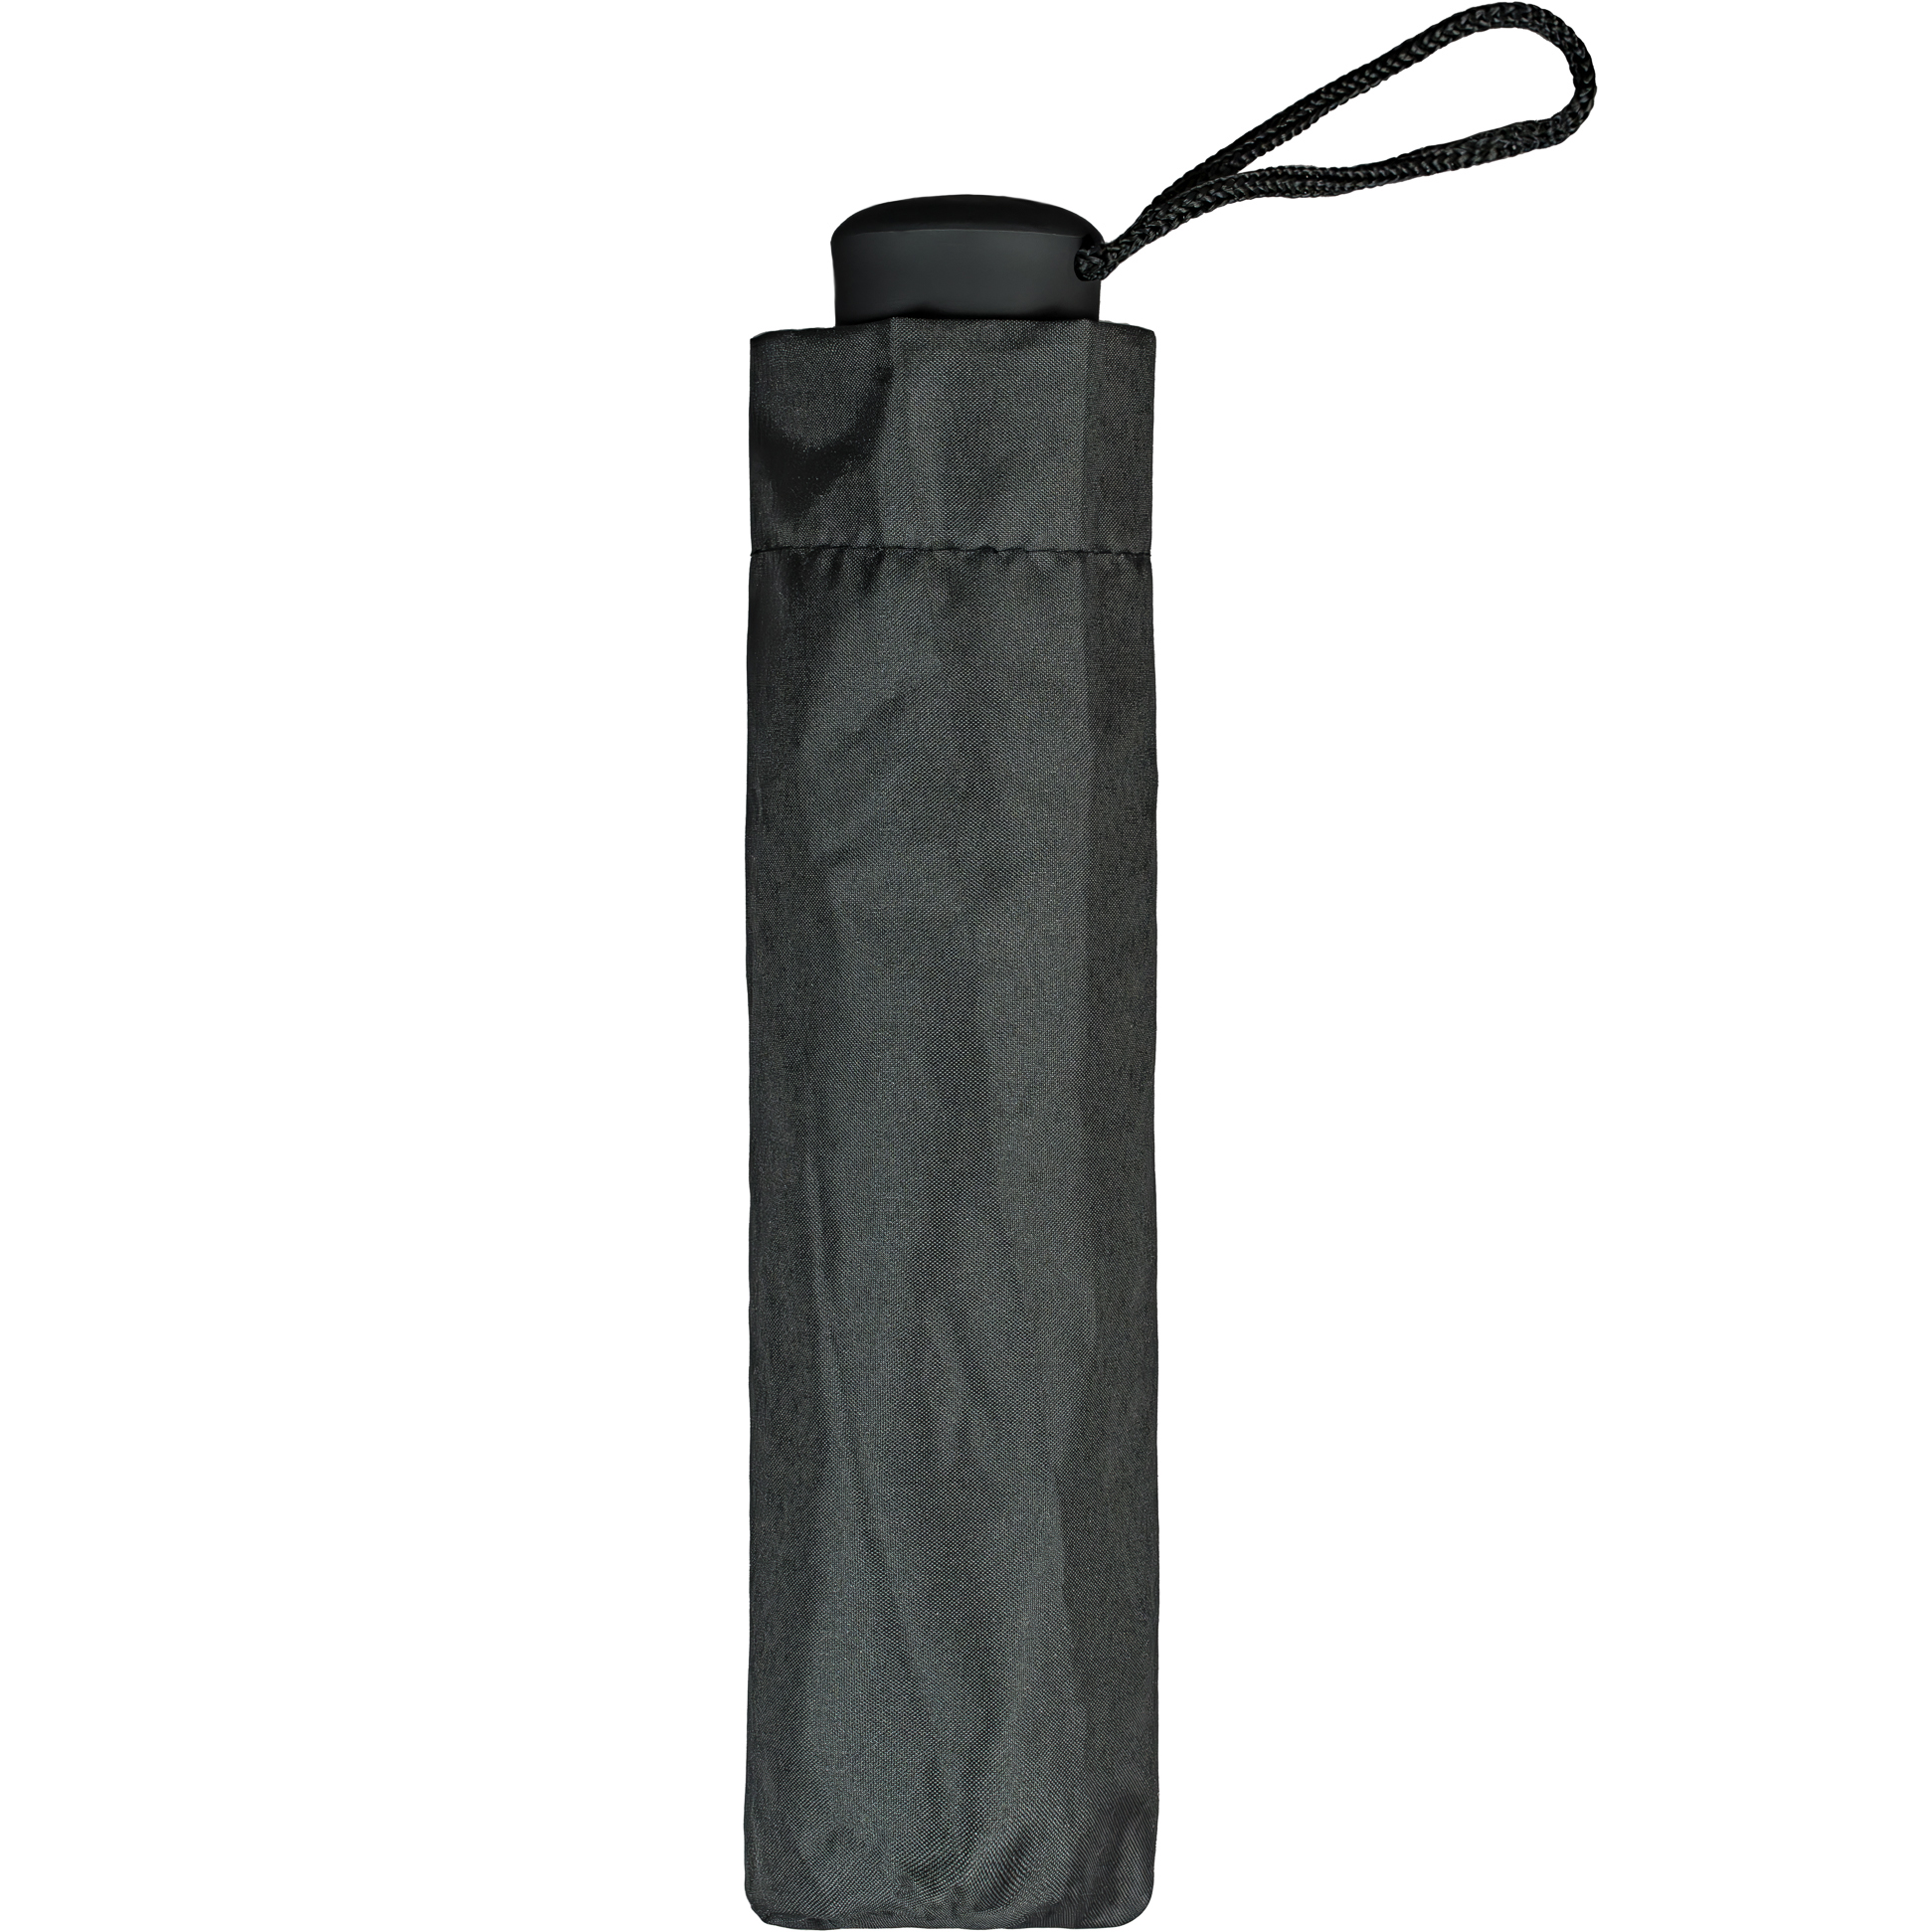 Black Compact Umbrella (3485B)